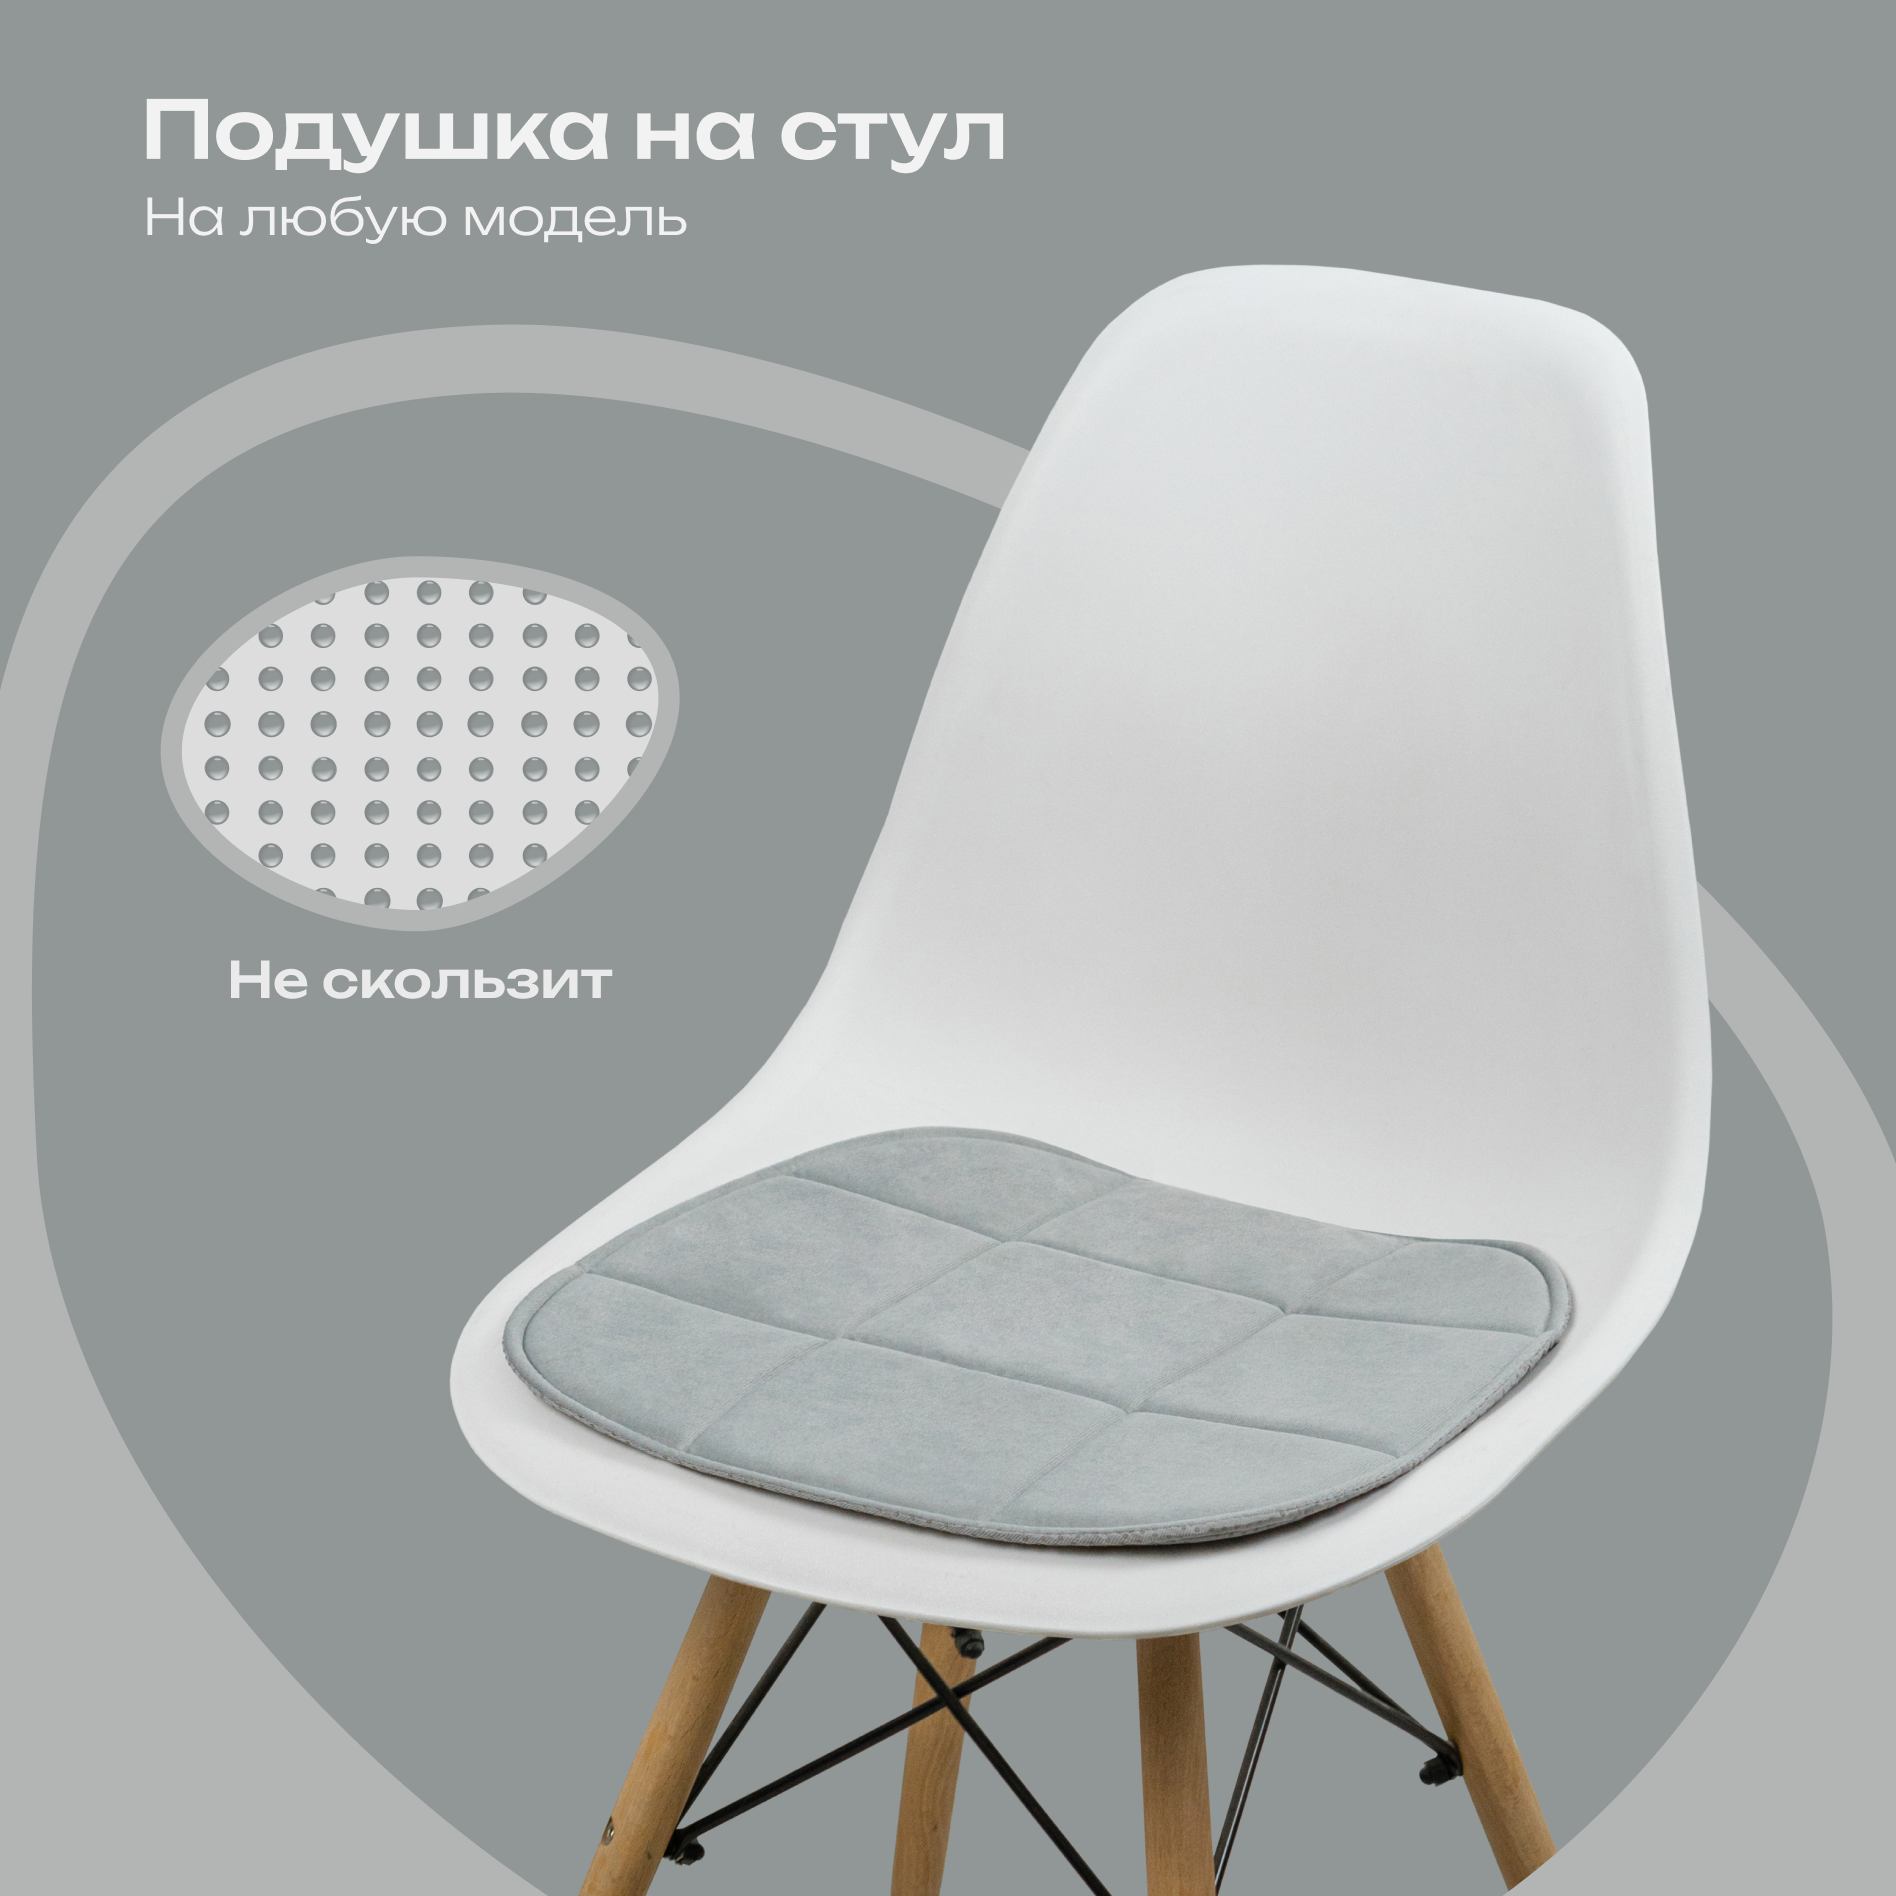 Подушка на стул из велюра, 39x40 см, противоскользящая, светло-серый